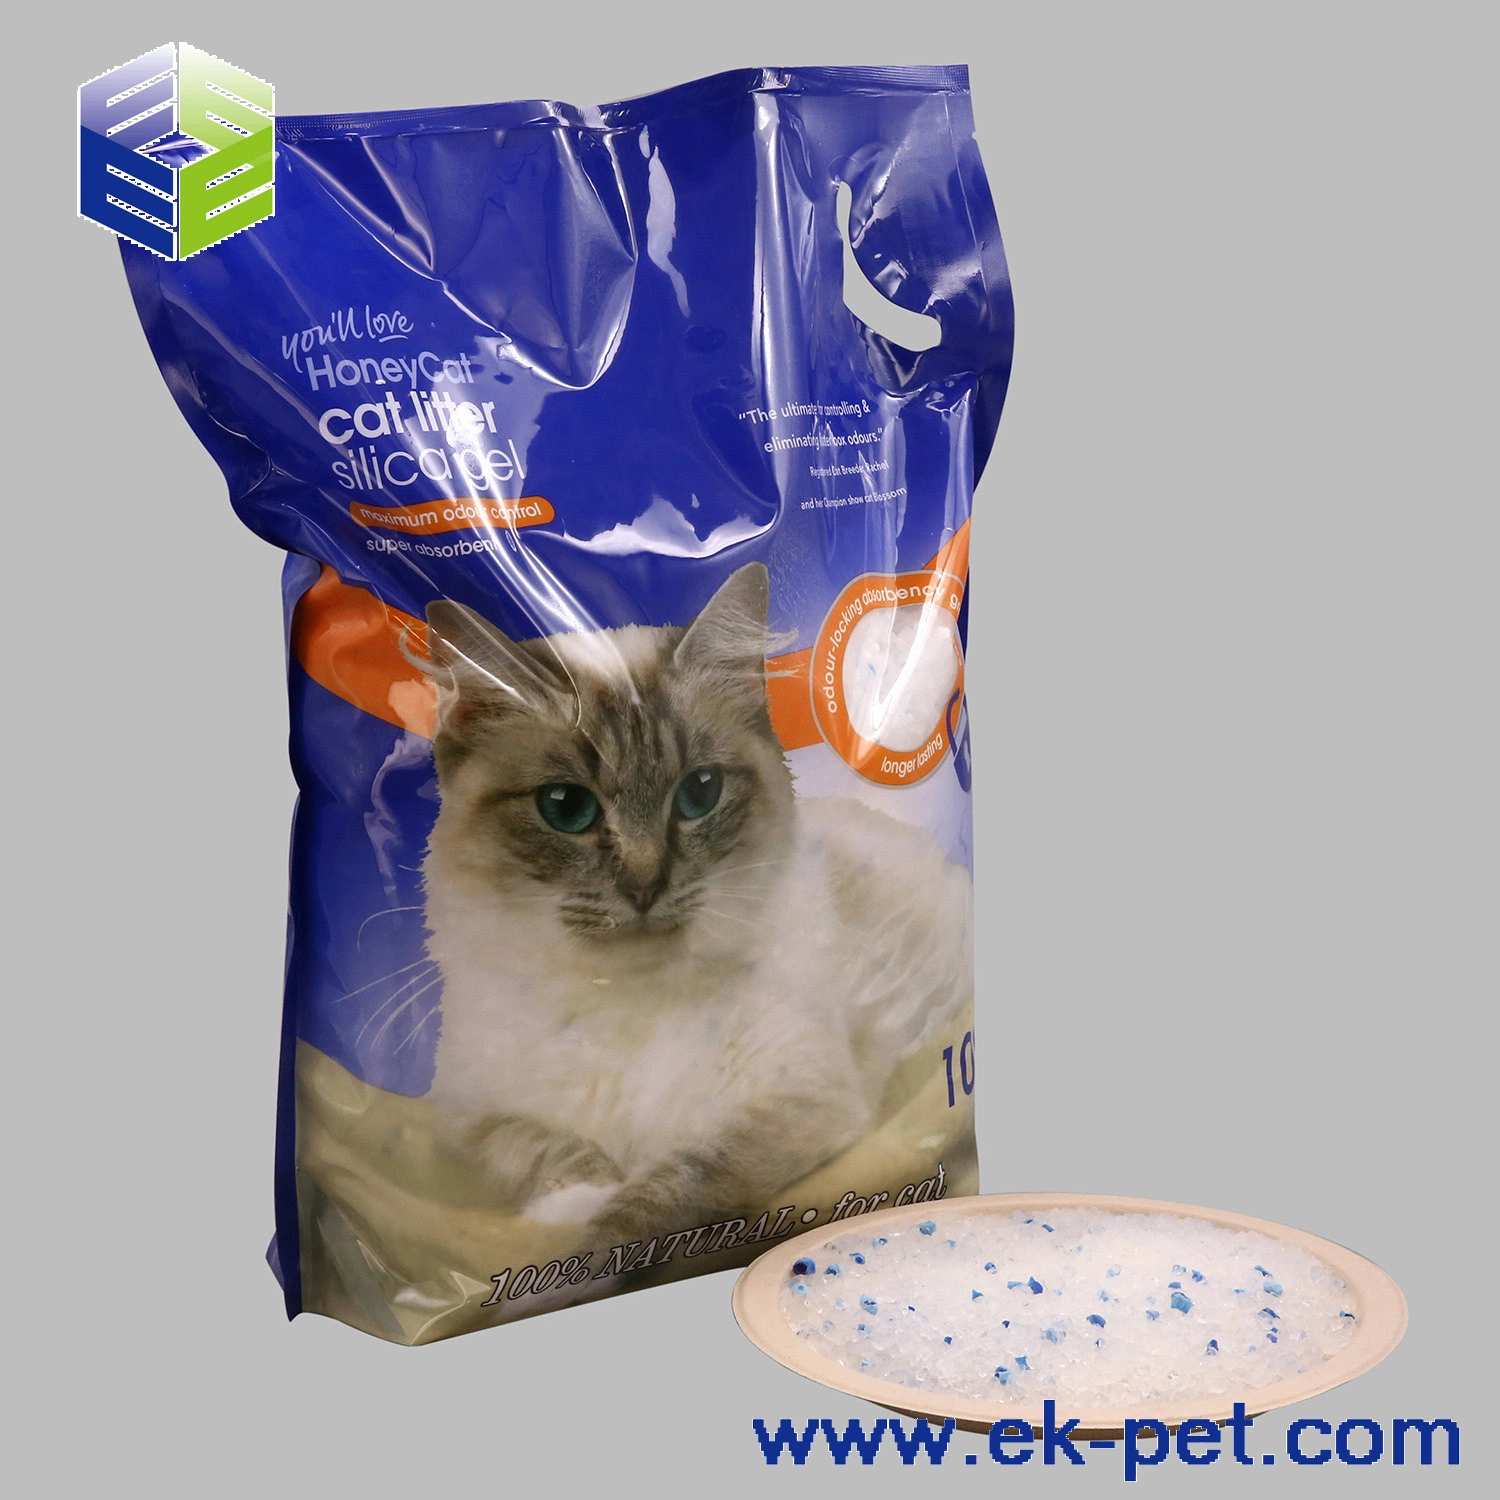 Le meilleur produit de nettoyage pour animaux de compagnie à base de cristaux de gel de silice, sans poussière et offrant un contrôle efficace des odeurs.